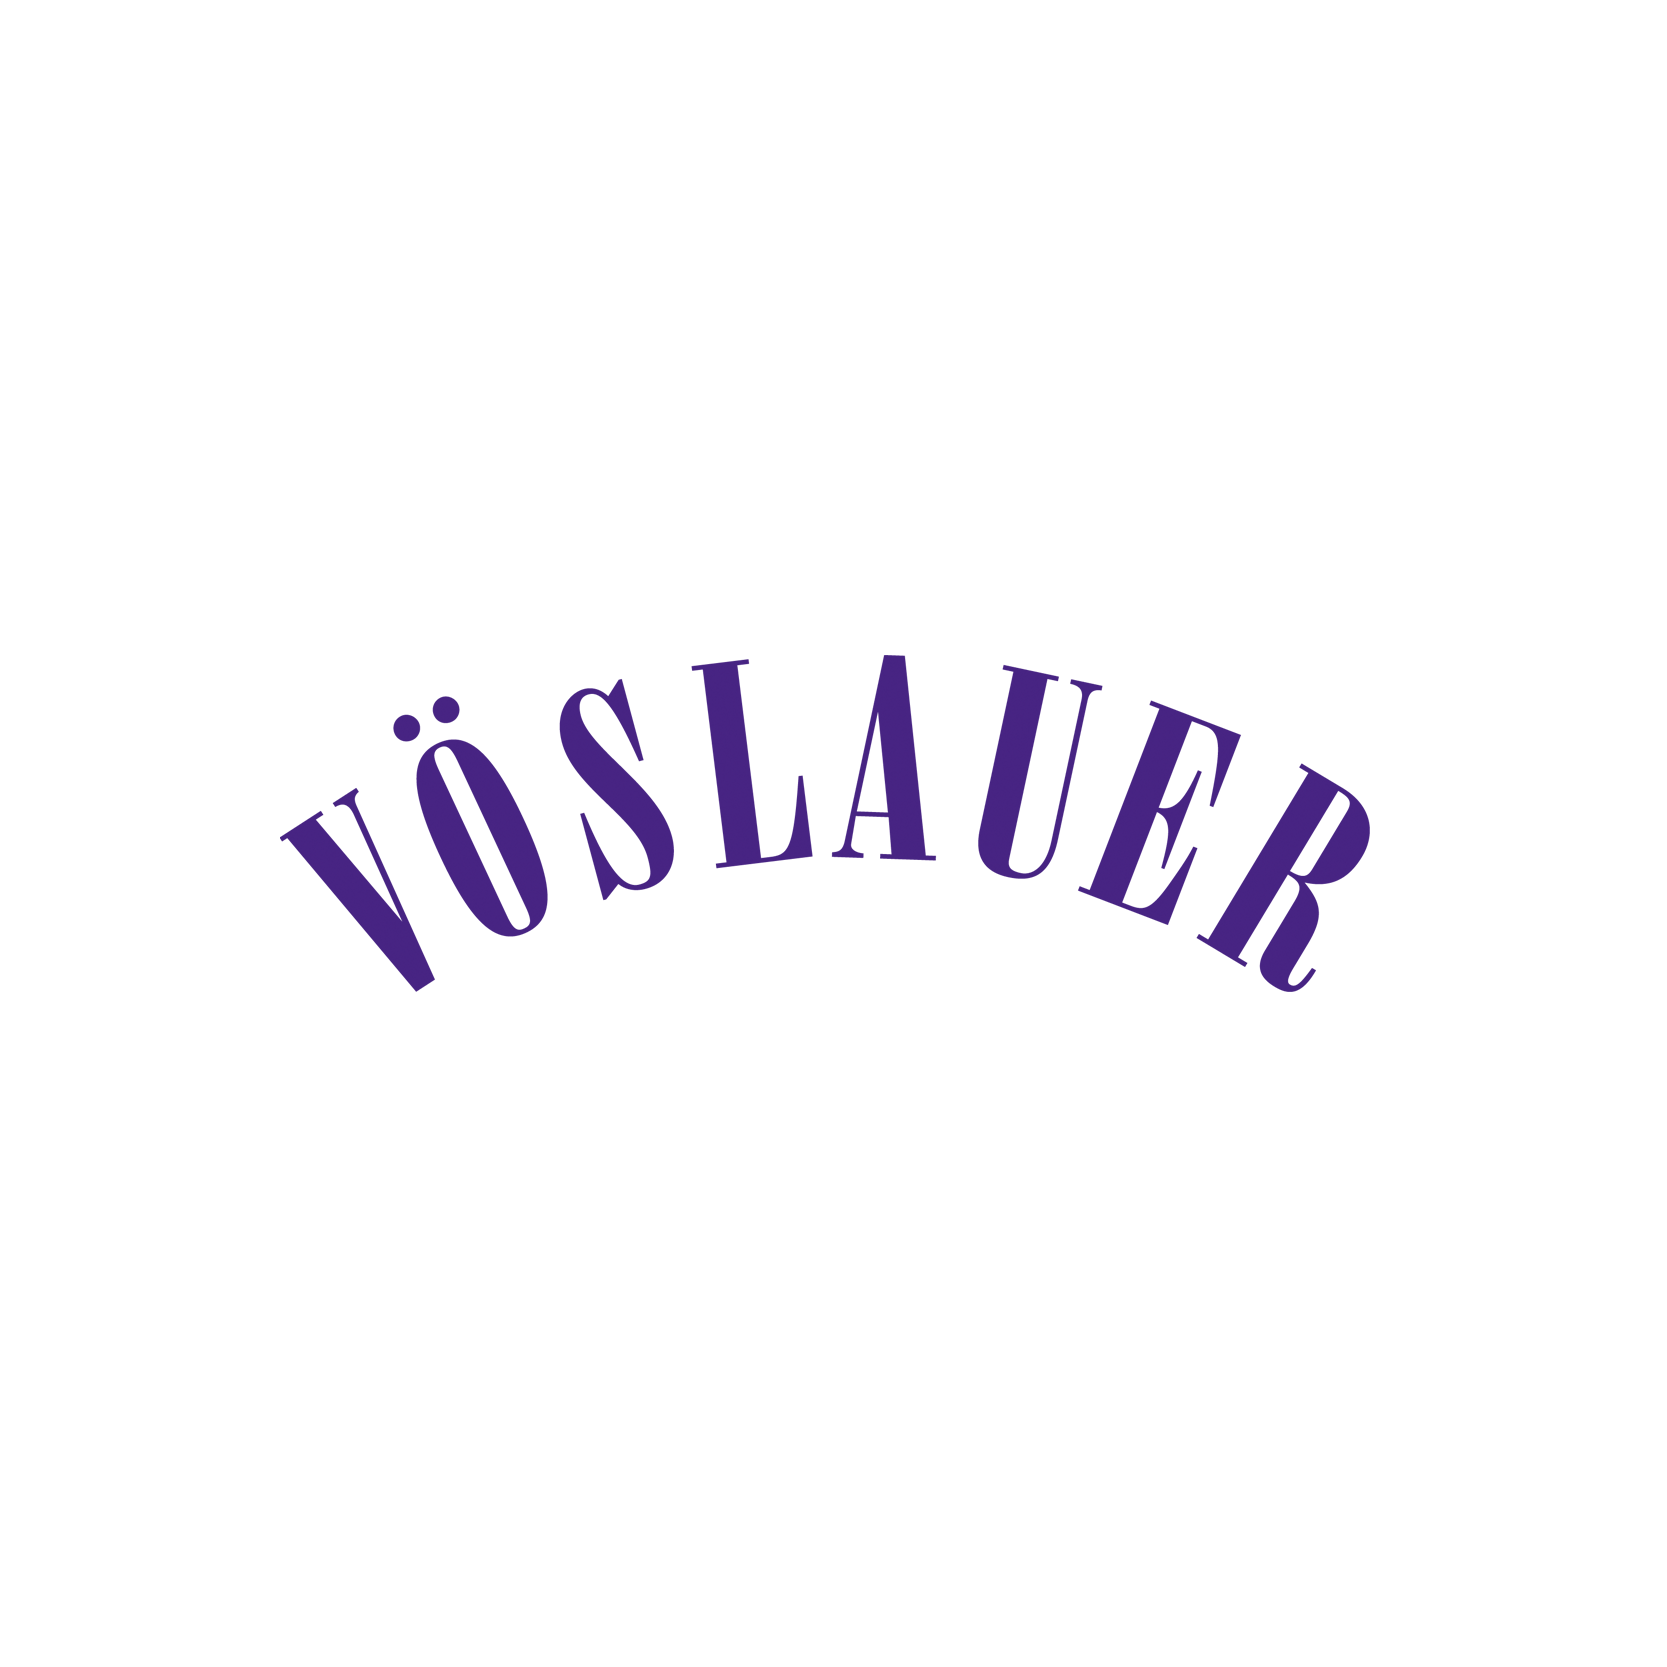 Sponsor_Vöslauer_logo